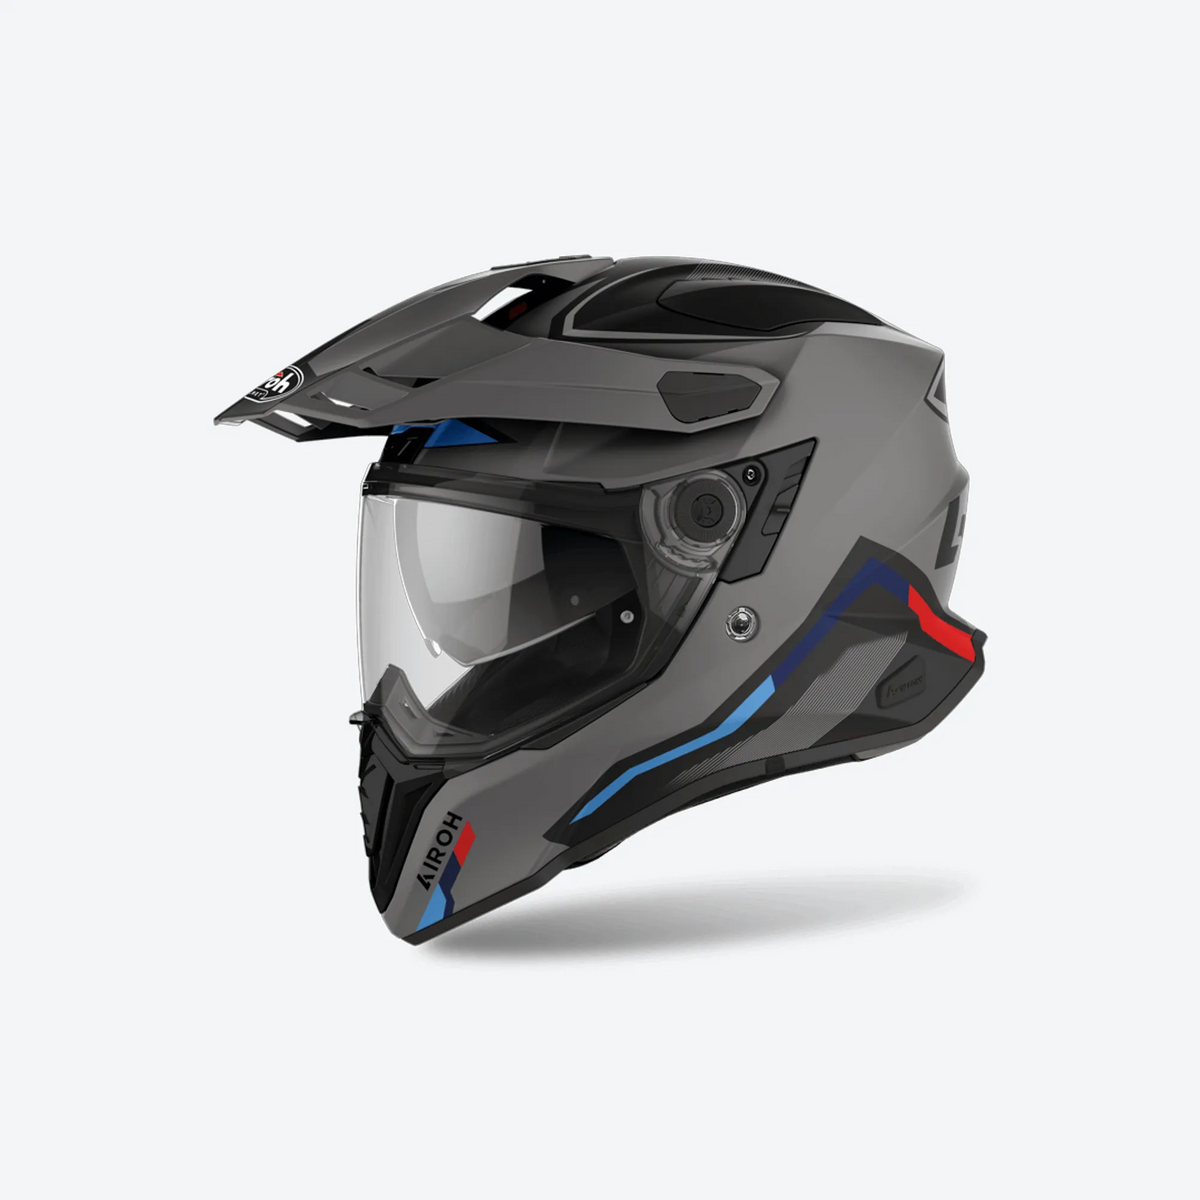 AIROH Commander FACTOR full-face adventure travel helmet with sun visor